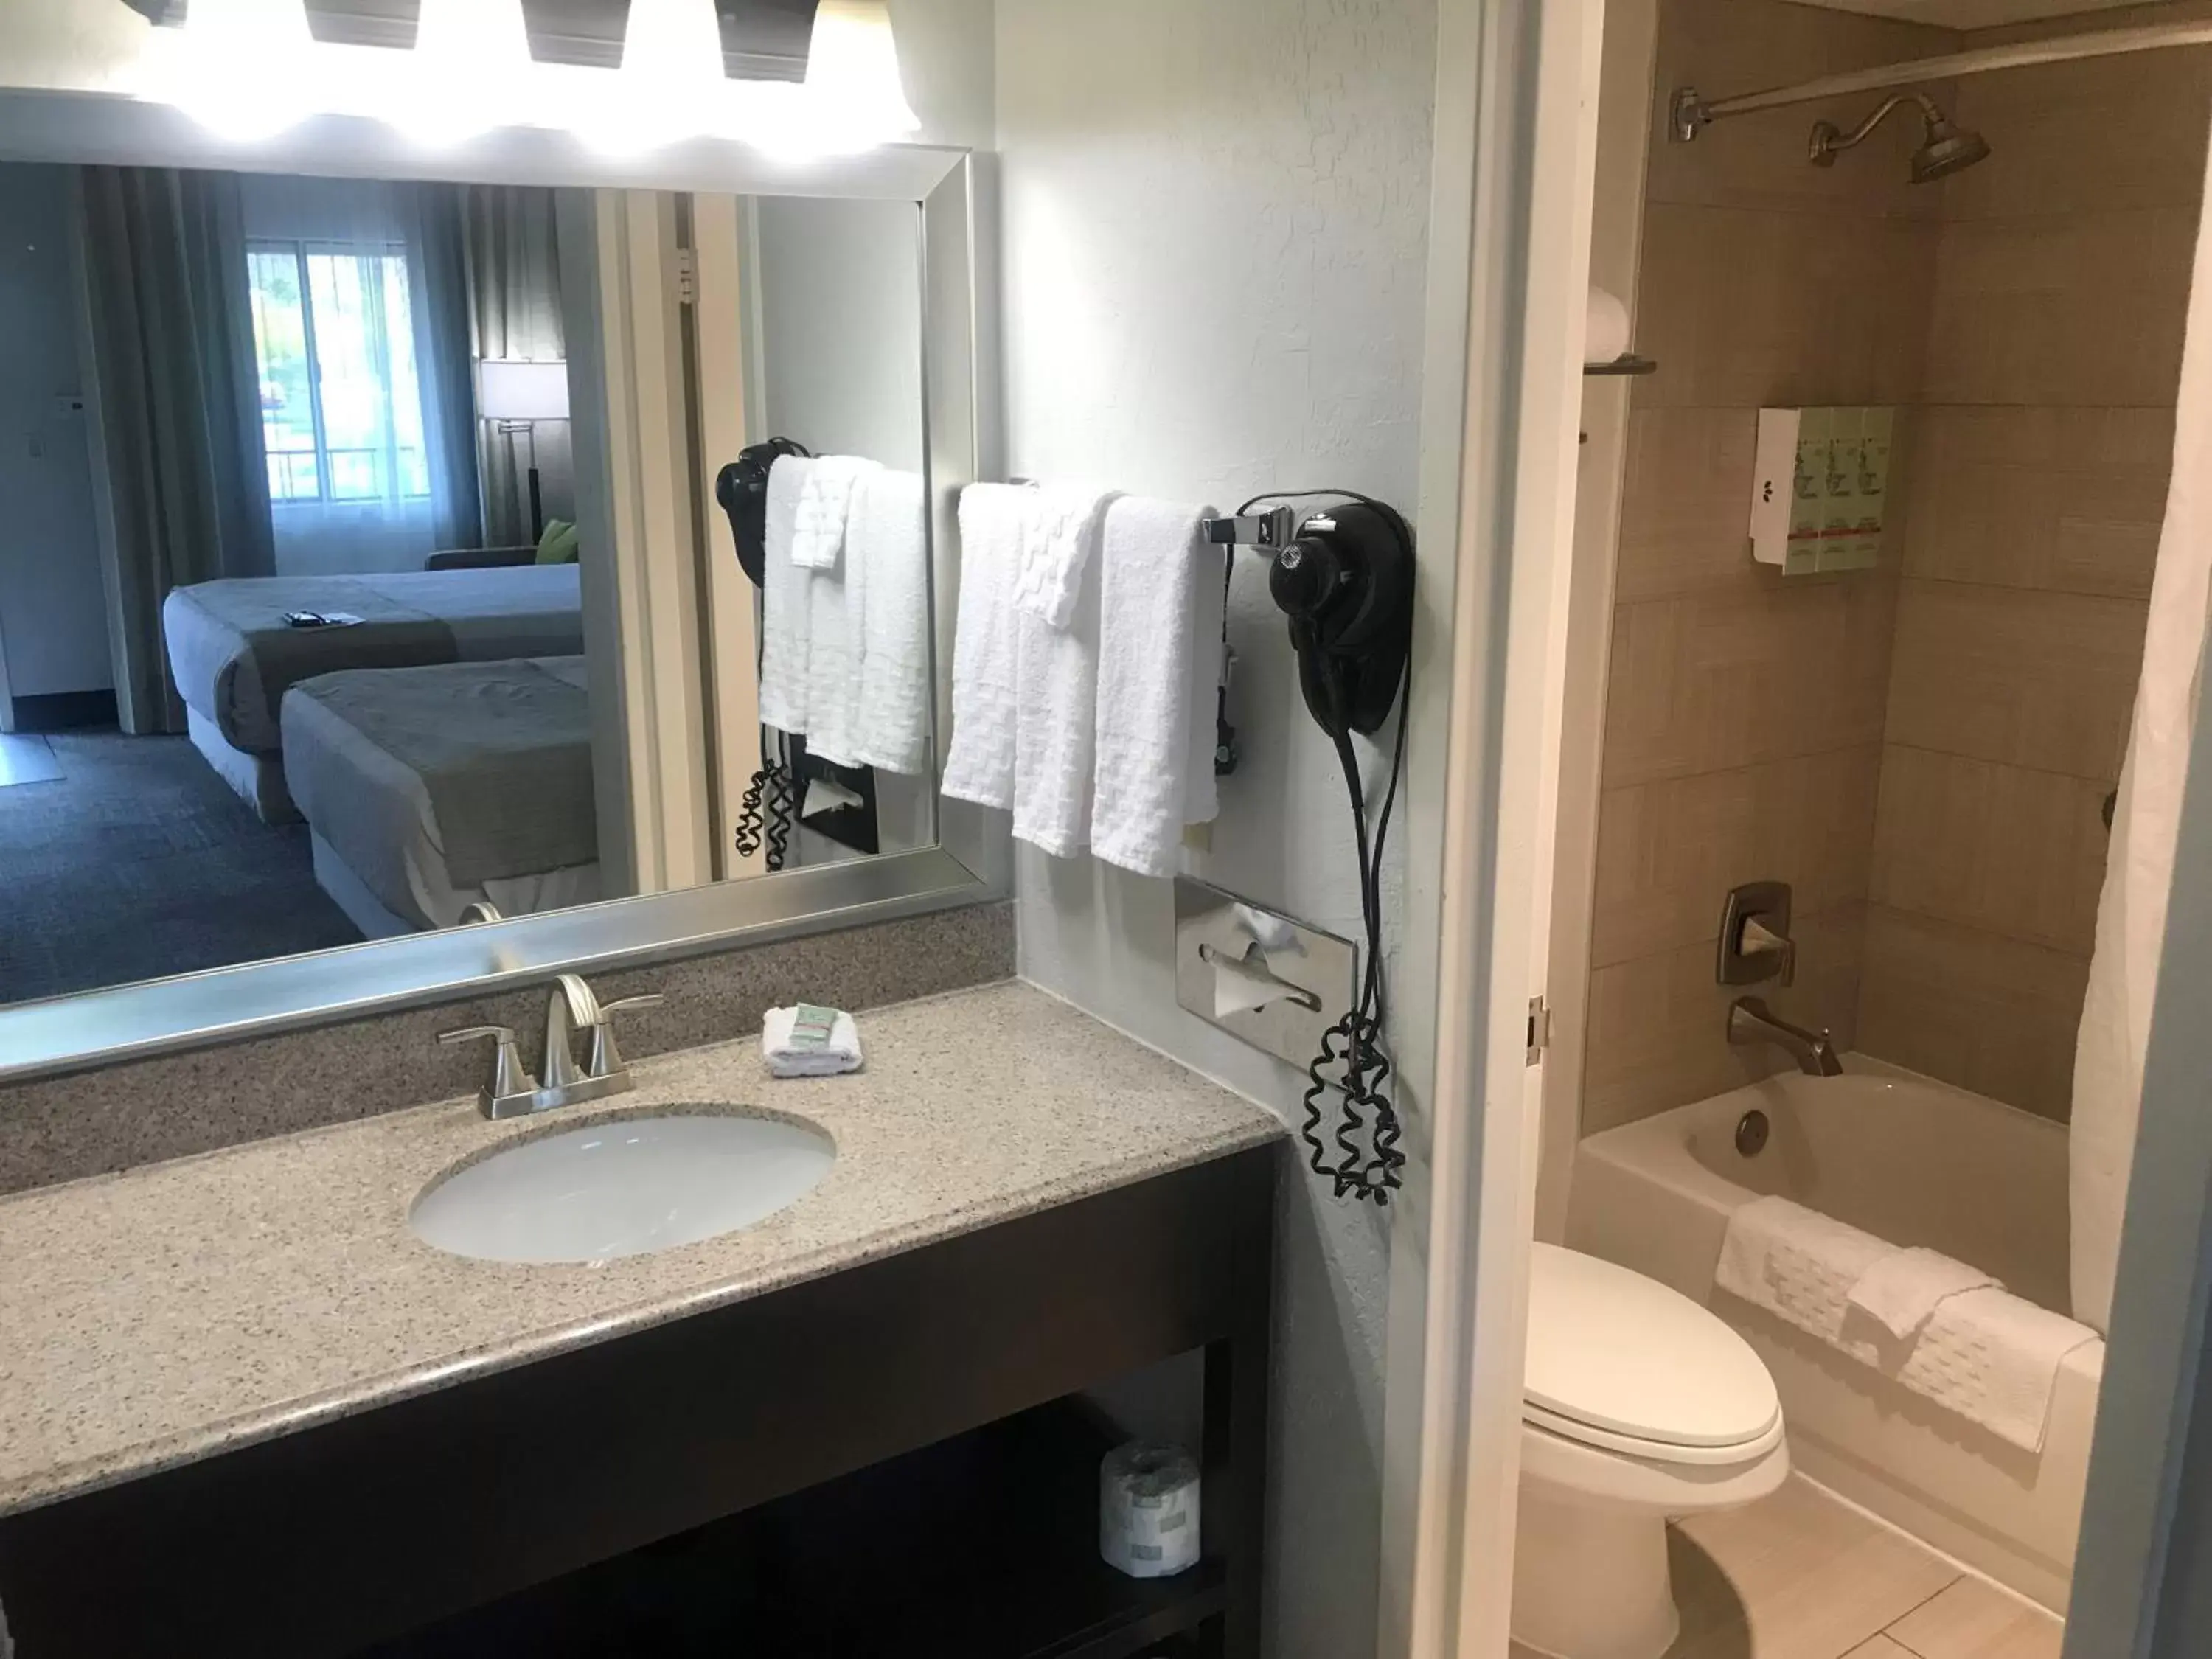 Bedroom, Bathroom in Best Western InnSuites Phoenix Hotel & Suites